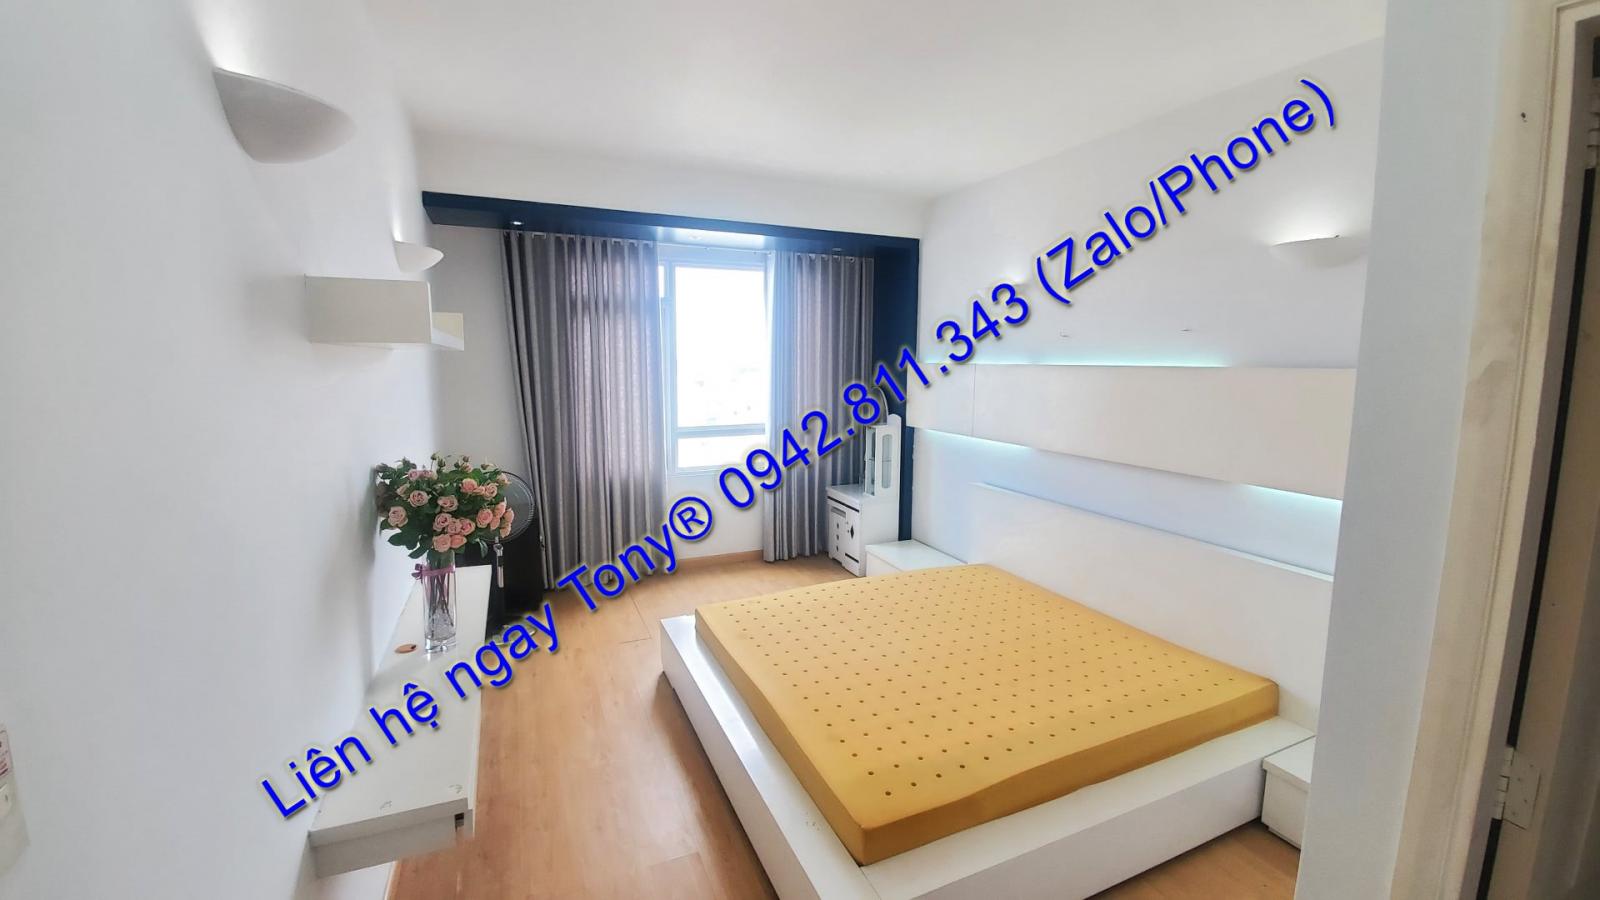 🆘Cho thuê căn hộ #SatraEximland 2 phòng ngủ/2WC full nội thất y hình chốt giá #14.5 TRIỆU / Tháng🆘